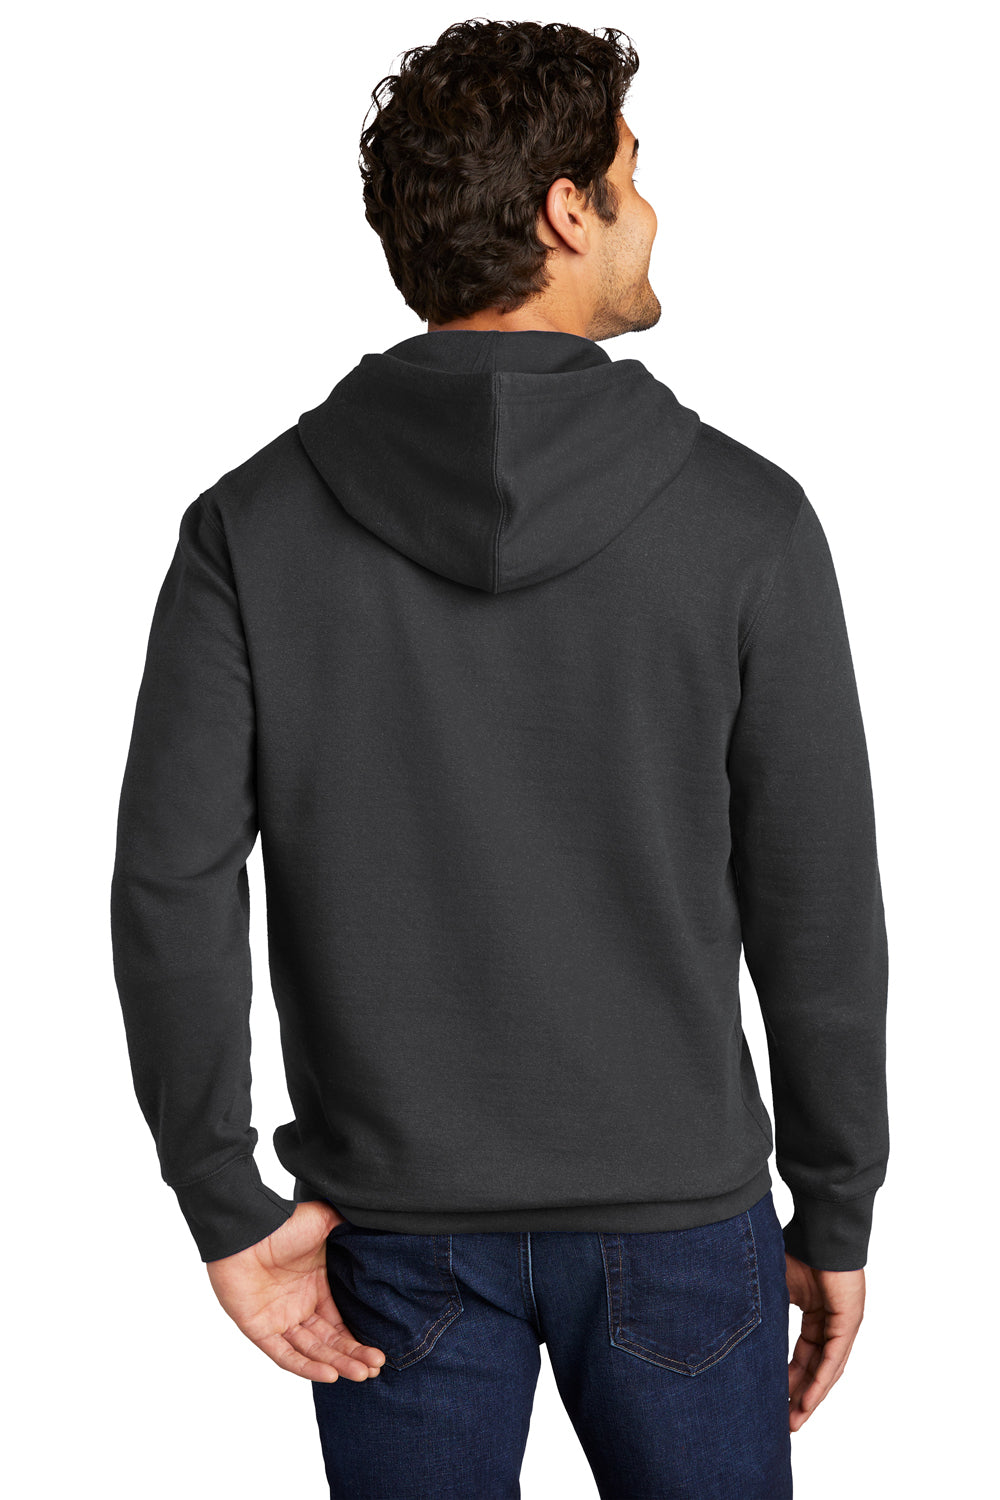 District Mens Very Important Fleece Hooded Sweatshirt Hoodie Charcoal Grey Side